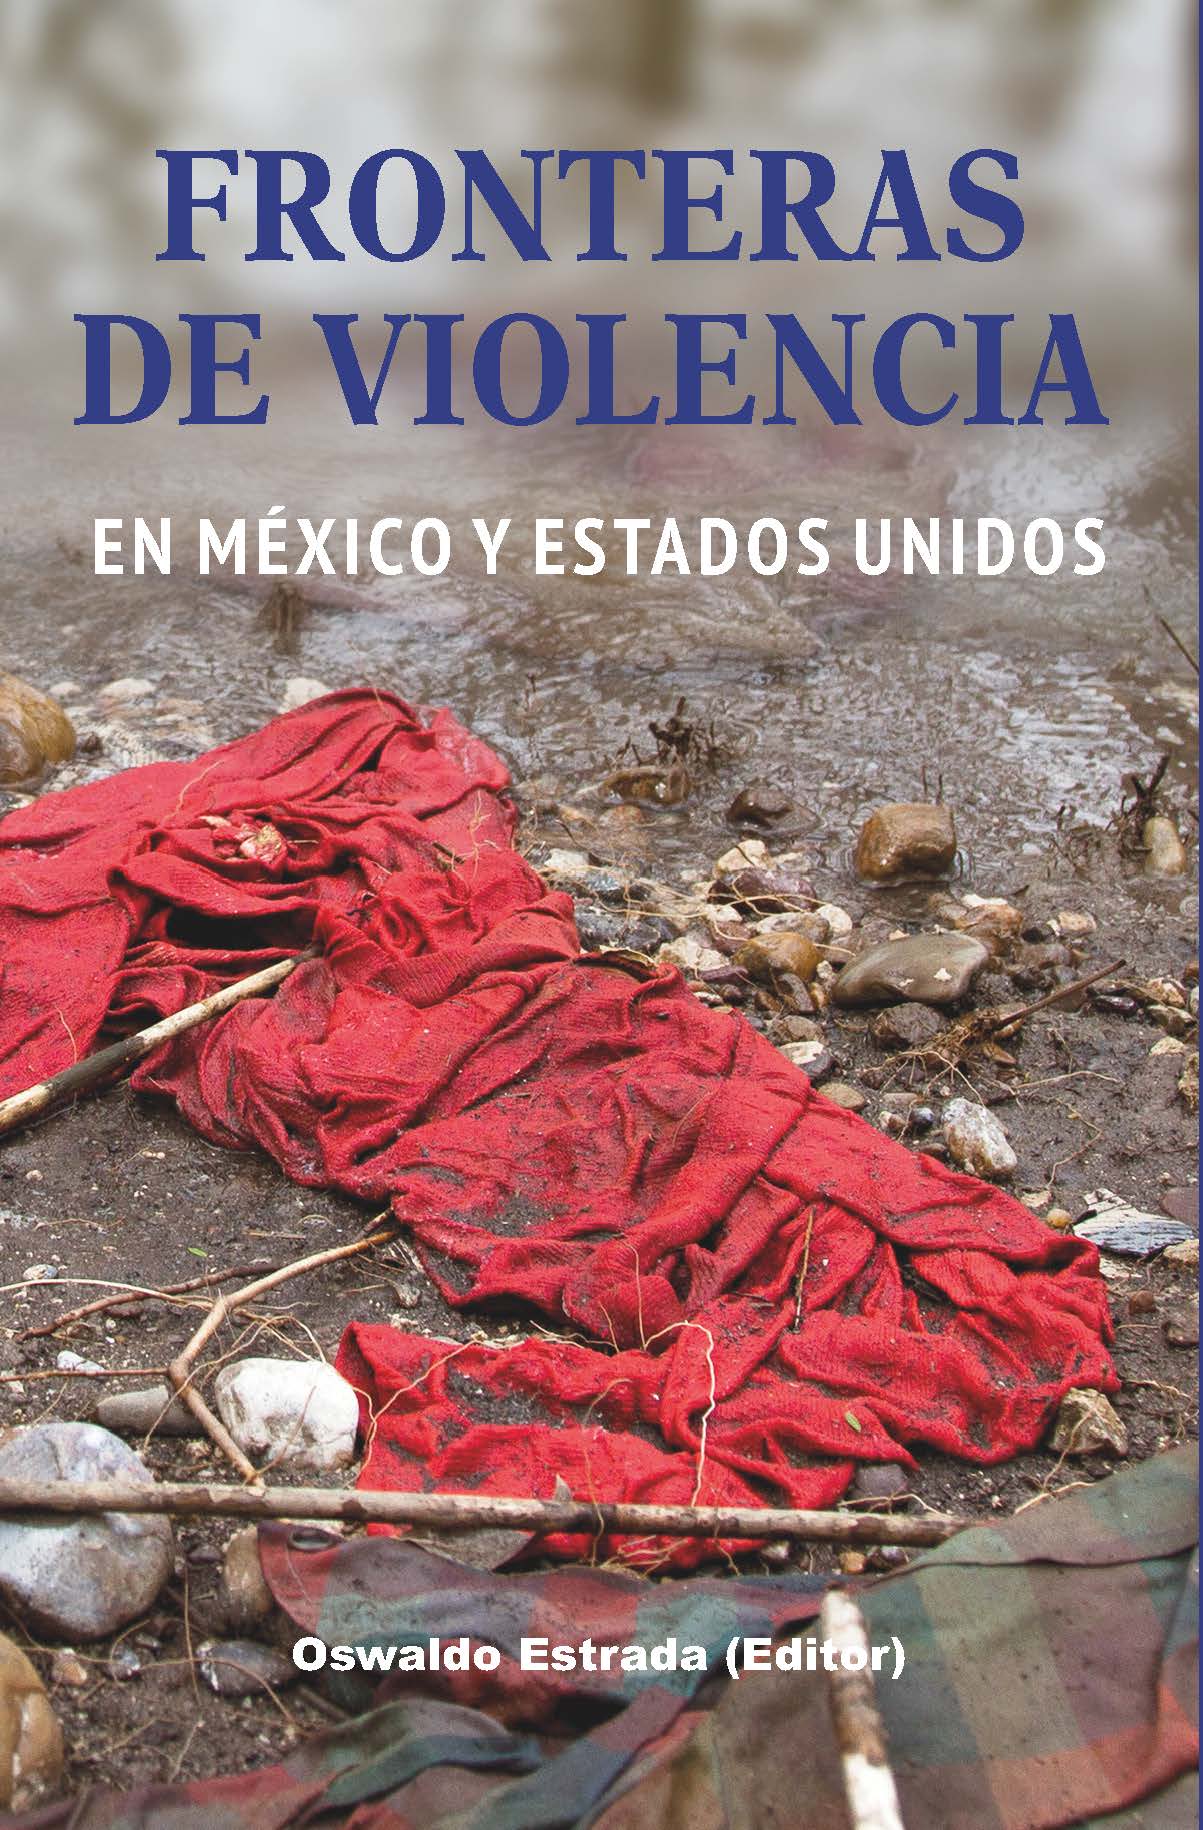 Fronteras de violencia en Mxico y Estados Unidos